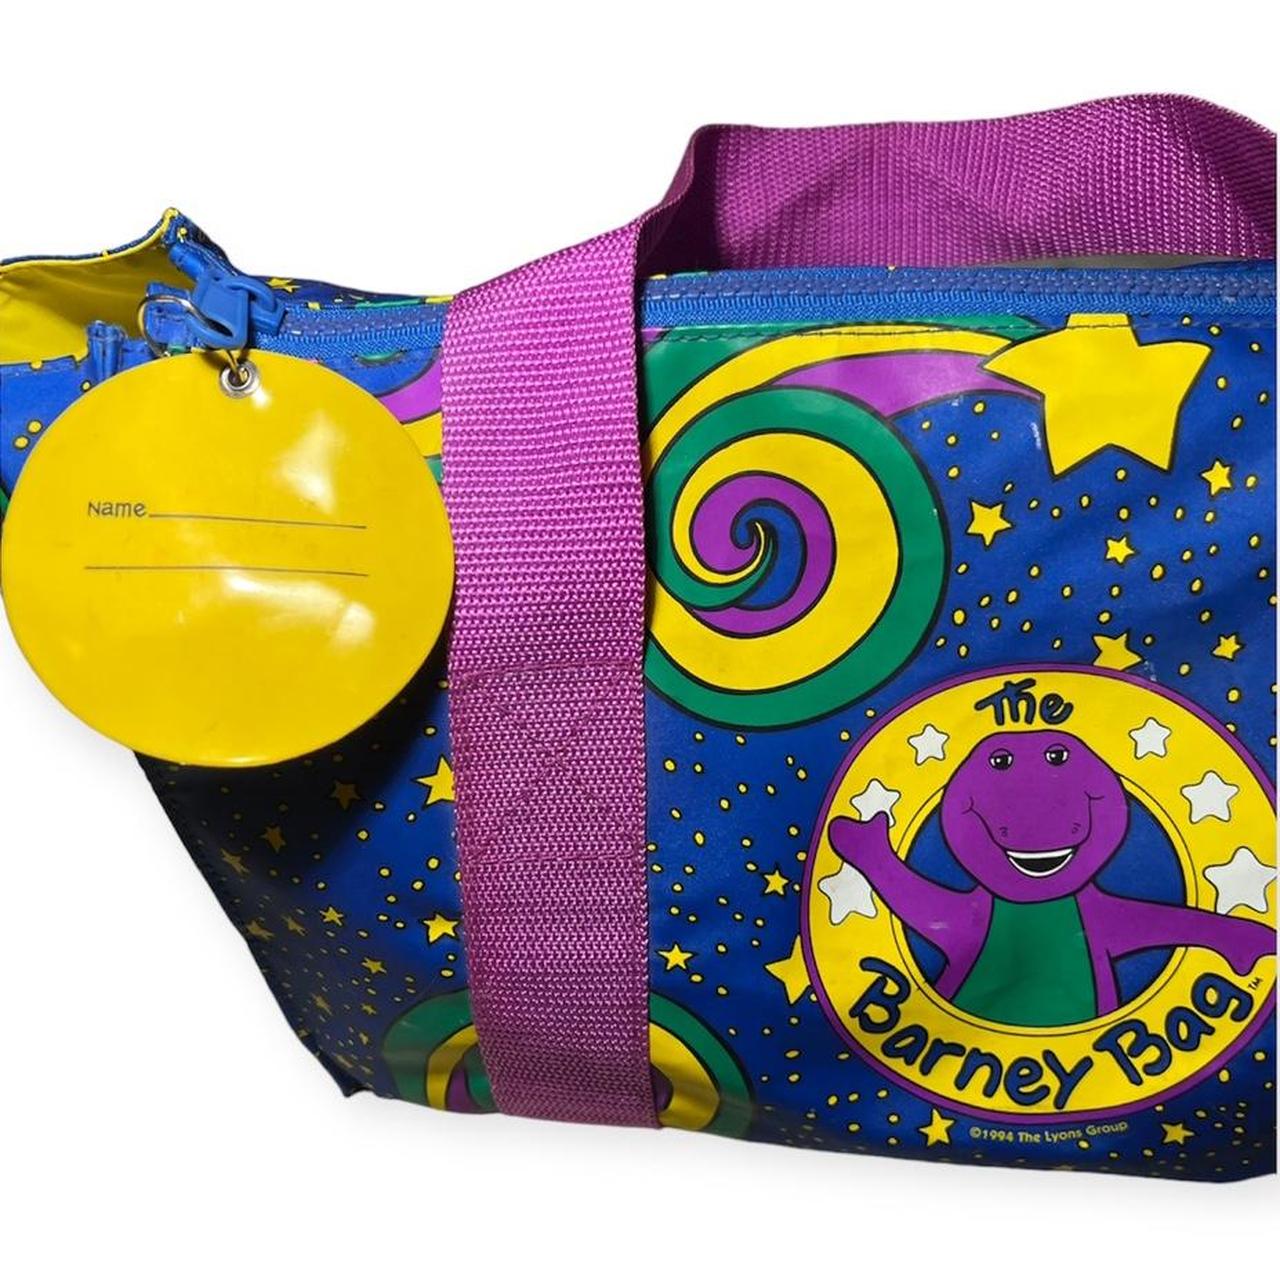 The Barney Bag Shoulder Bag Travel Bag 1994 14”... - Depop